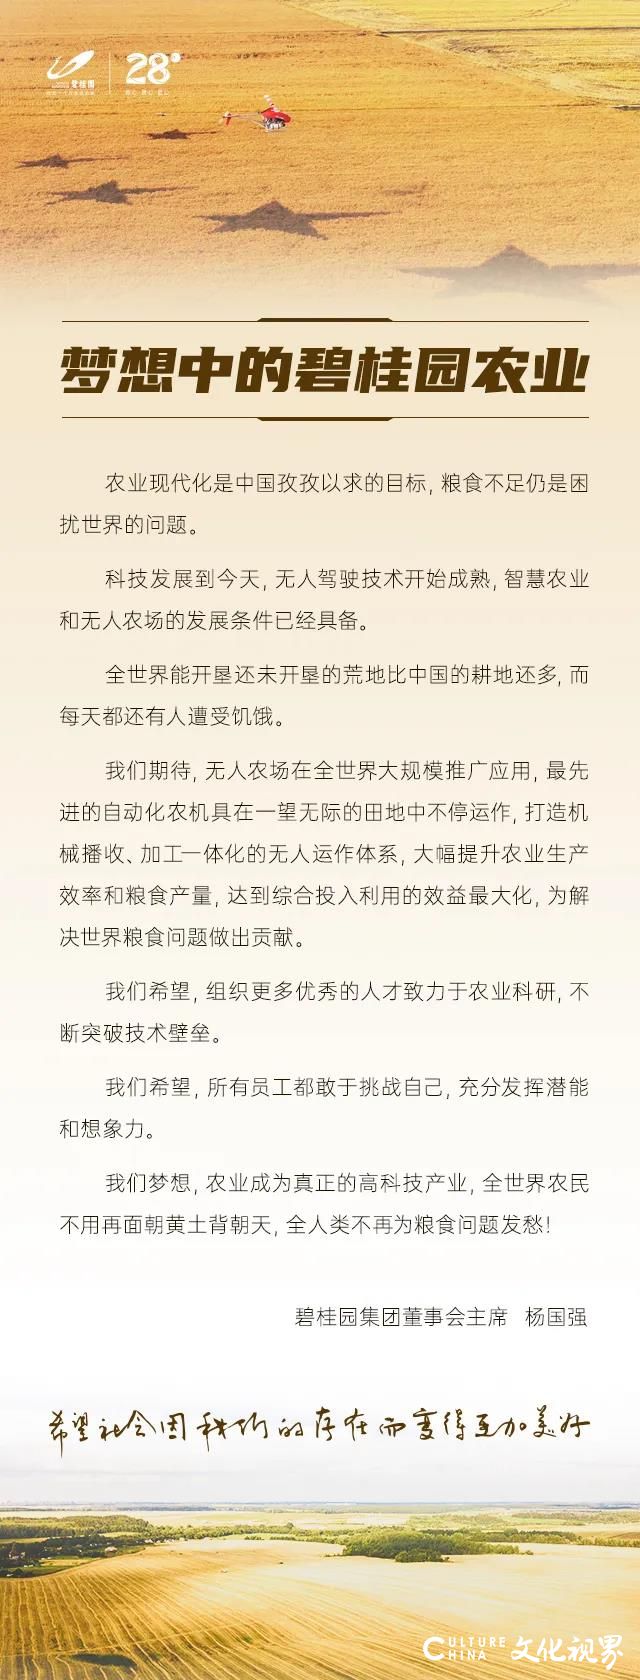 碧桂园集团创始人、董事会主席杨国强写下《我梦想中的碧桂园农业》，激励碧桂园人为推动中国农业现代化而奋斗